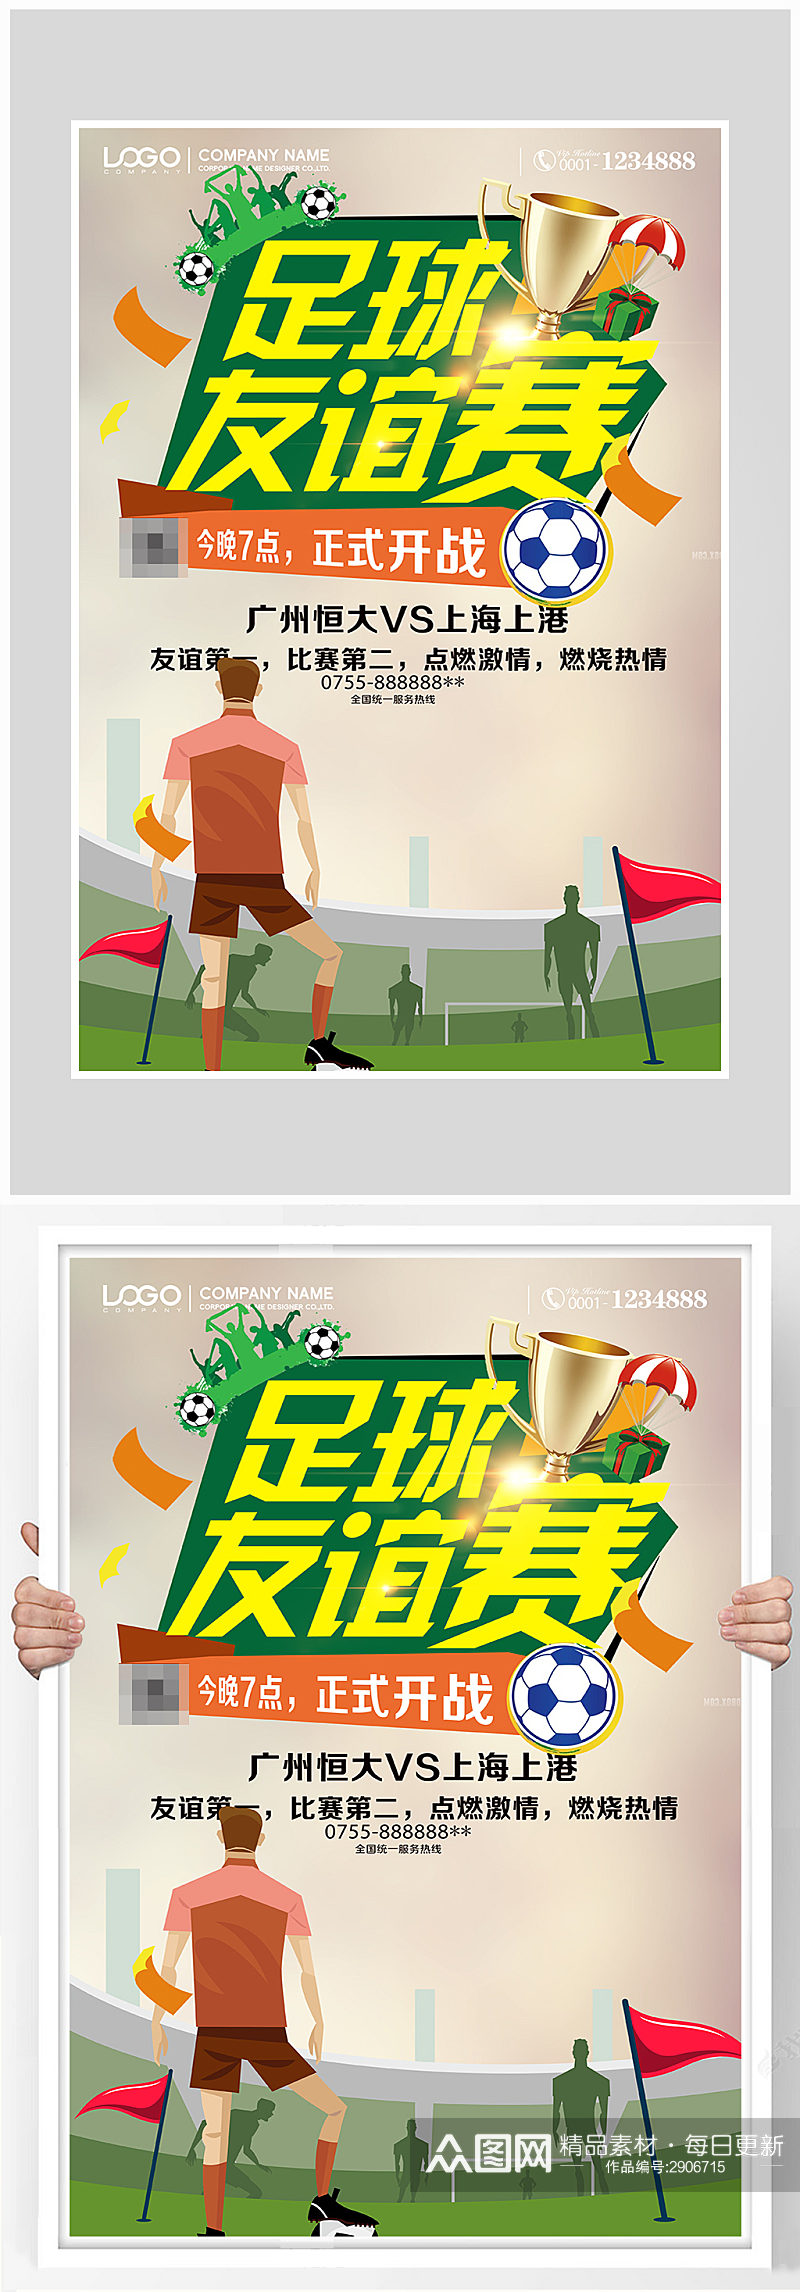 创意足球体育竞赛海报设计素材